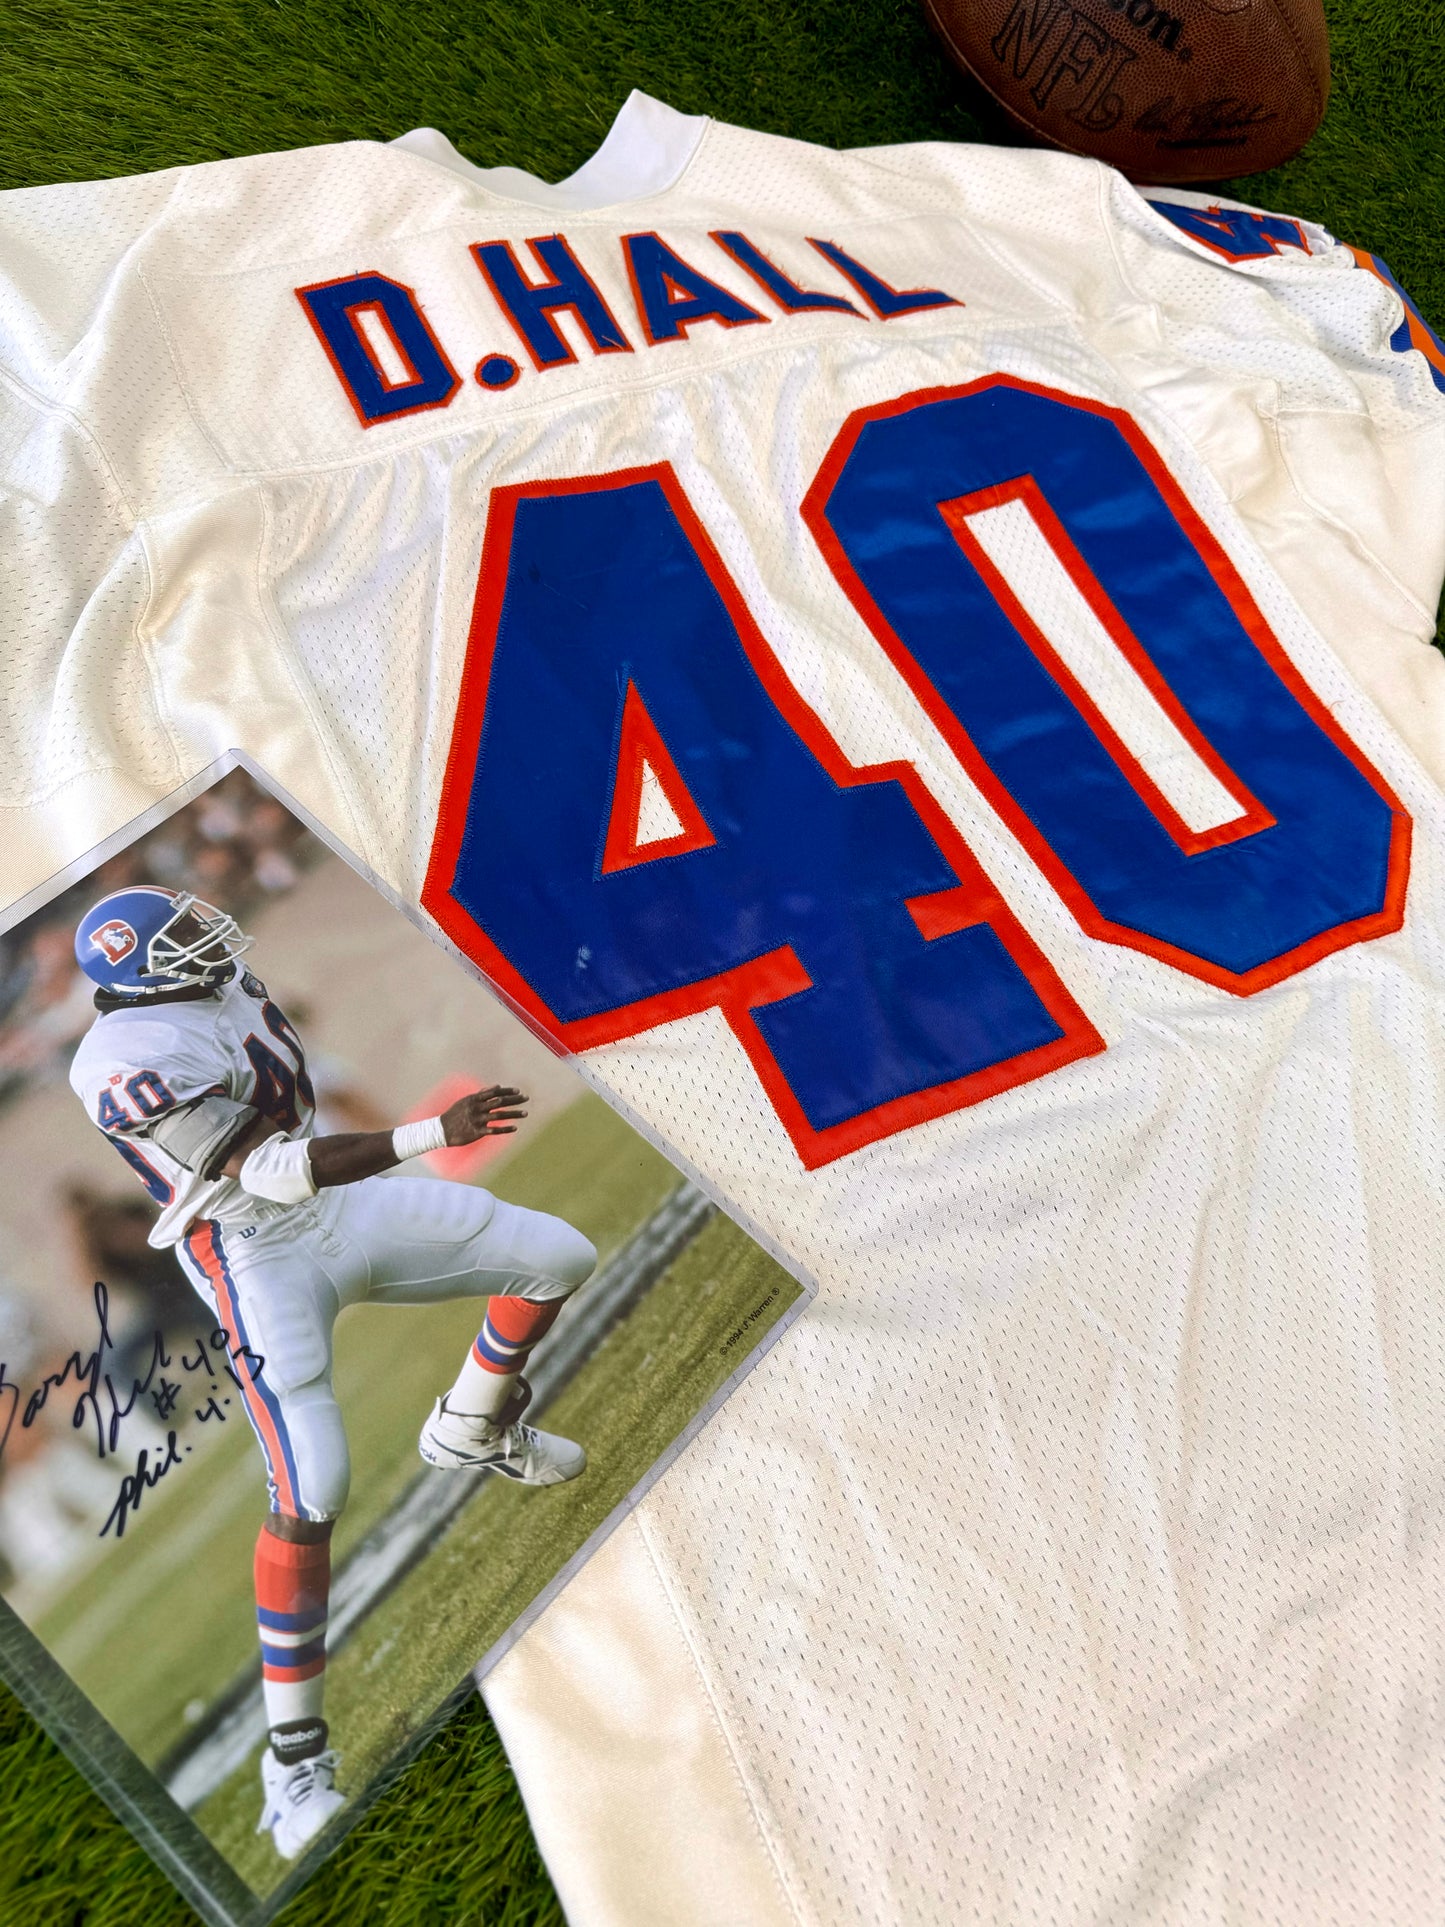 Denver Broncos Darryl Hall Game Worn 1994 NFL Football Jersey (46/Large)